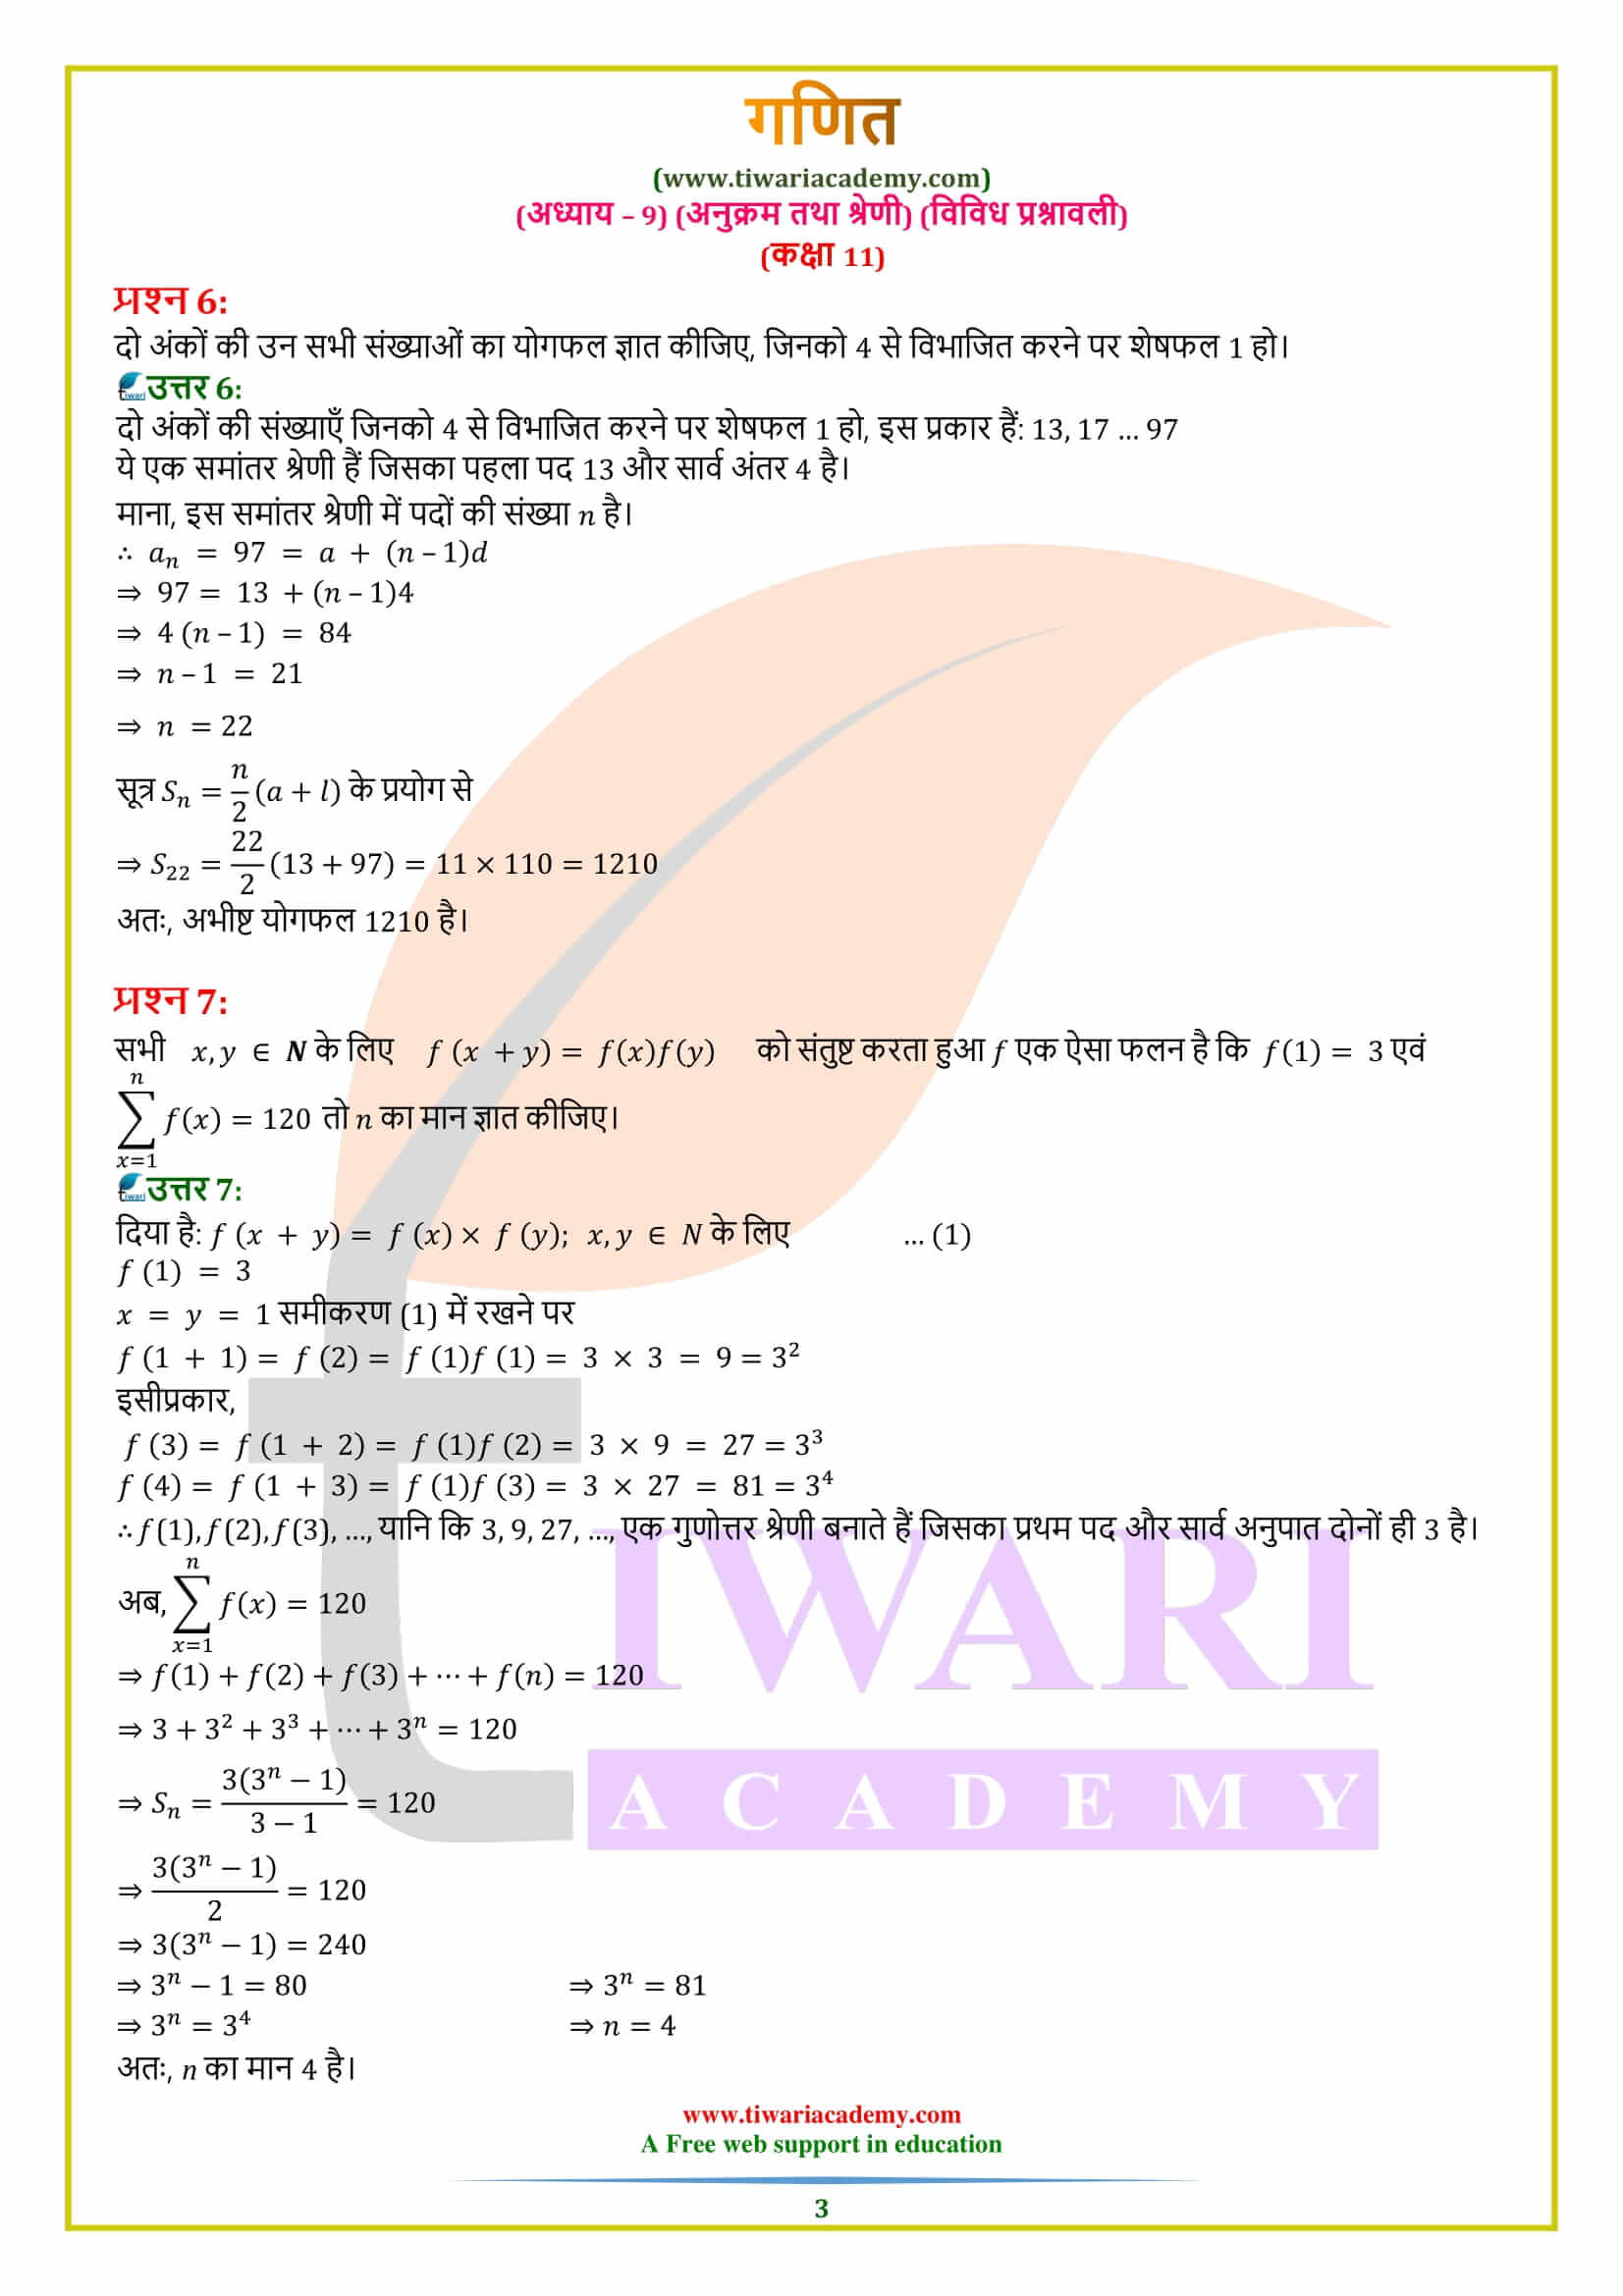 एनसीईआरटी समाधान कक्षा 11 गणित अध्याय 9 विविध प्रश्नावली के हल हिंदी में